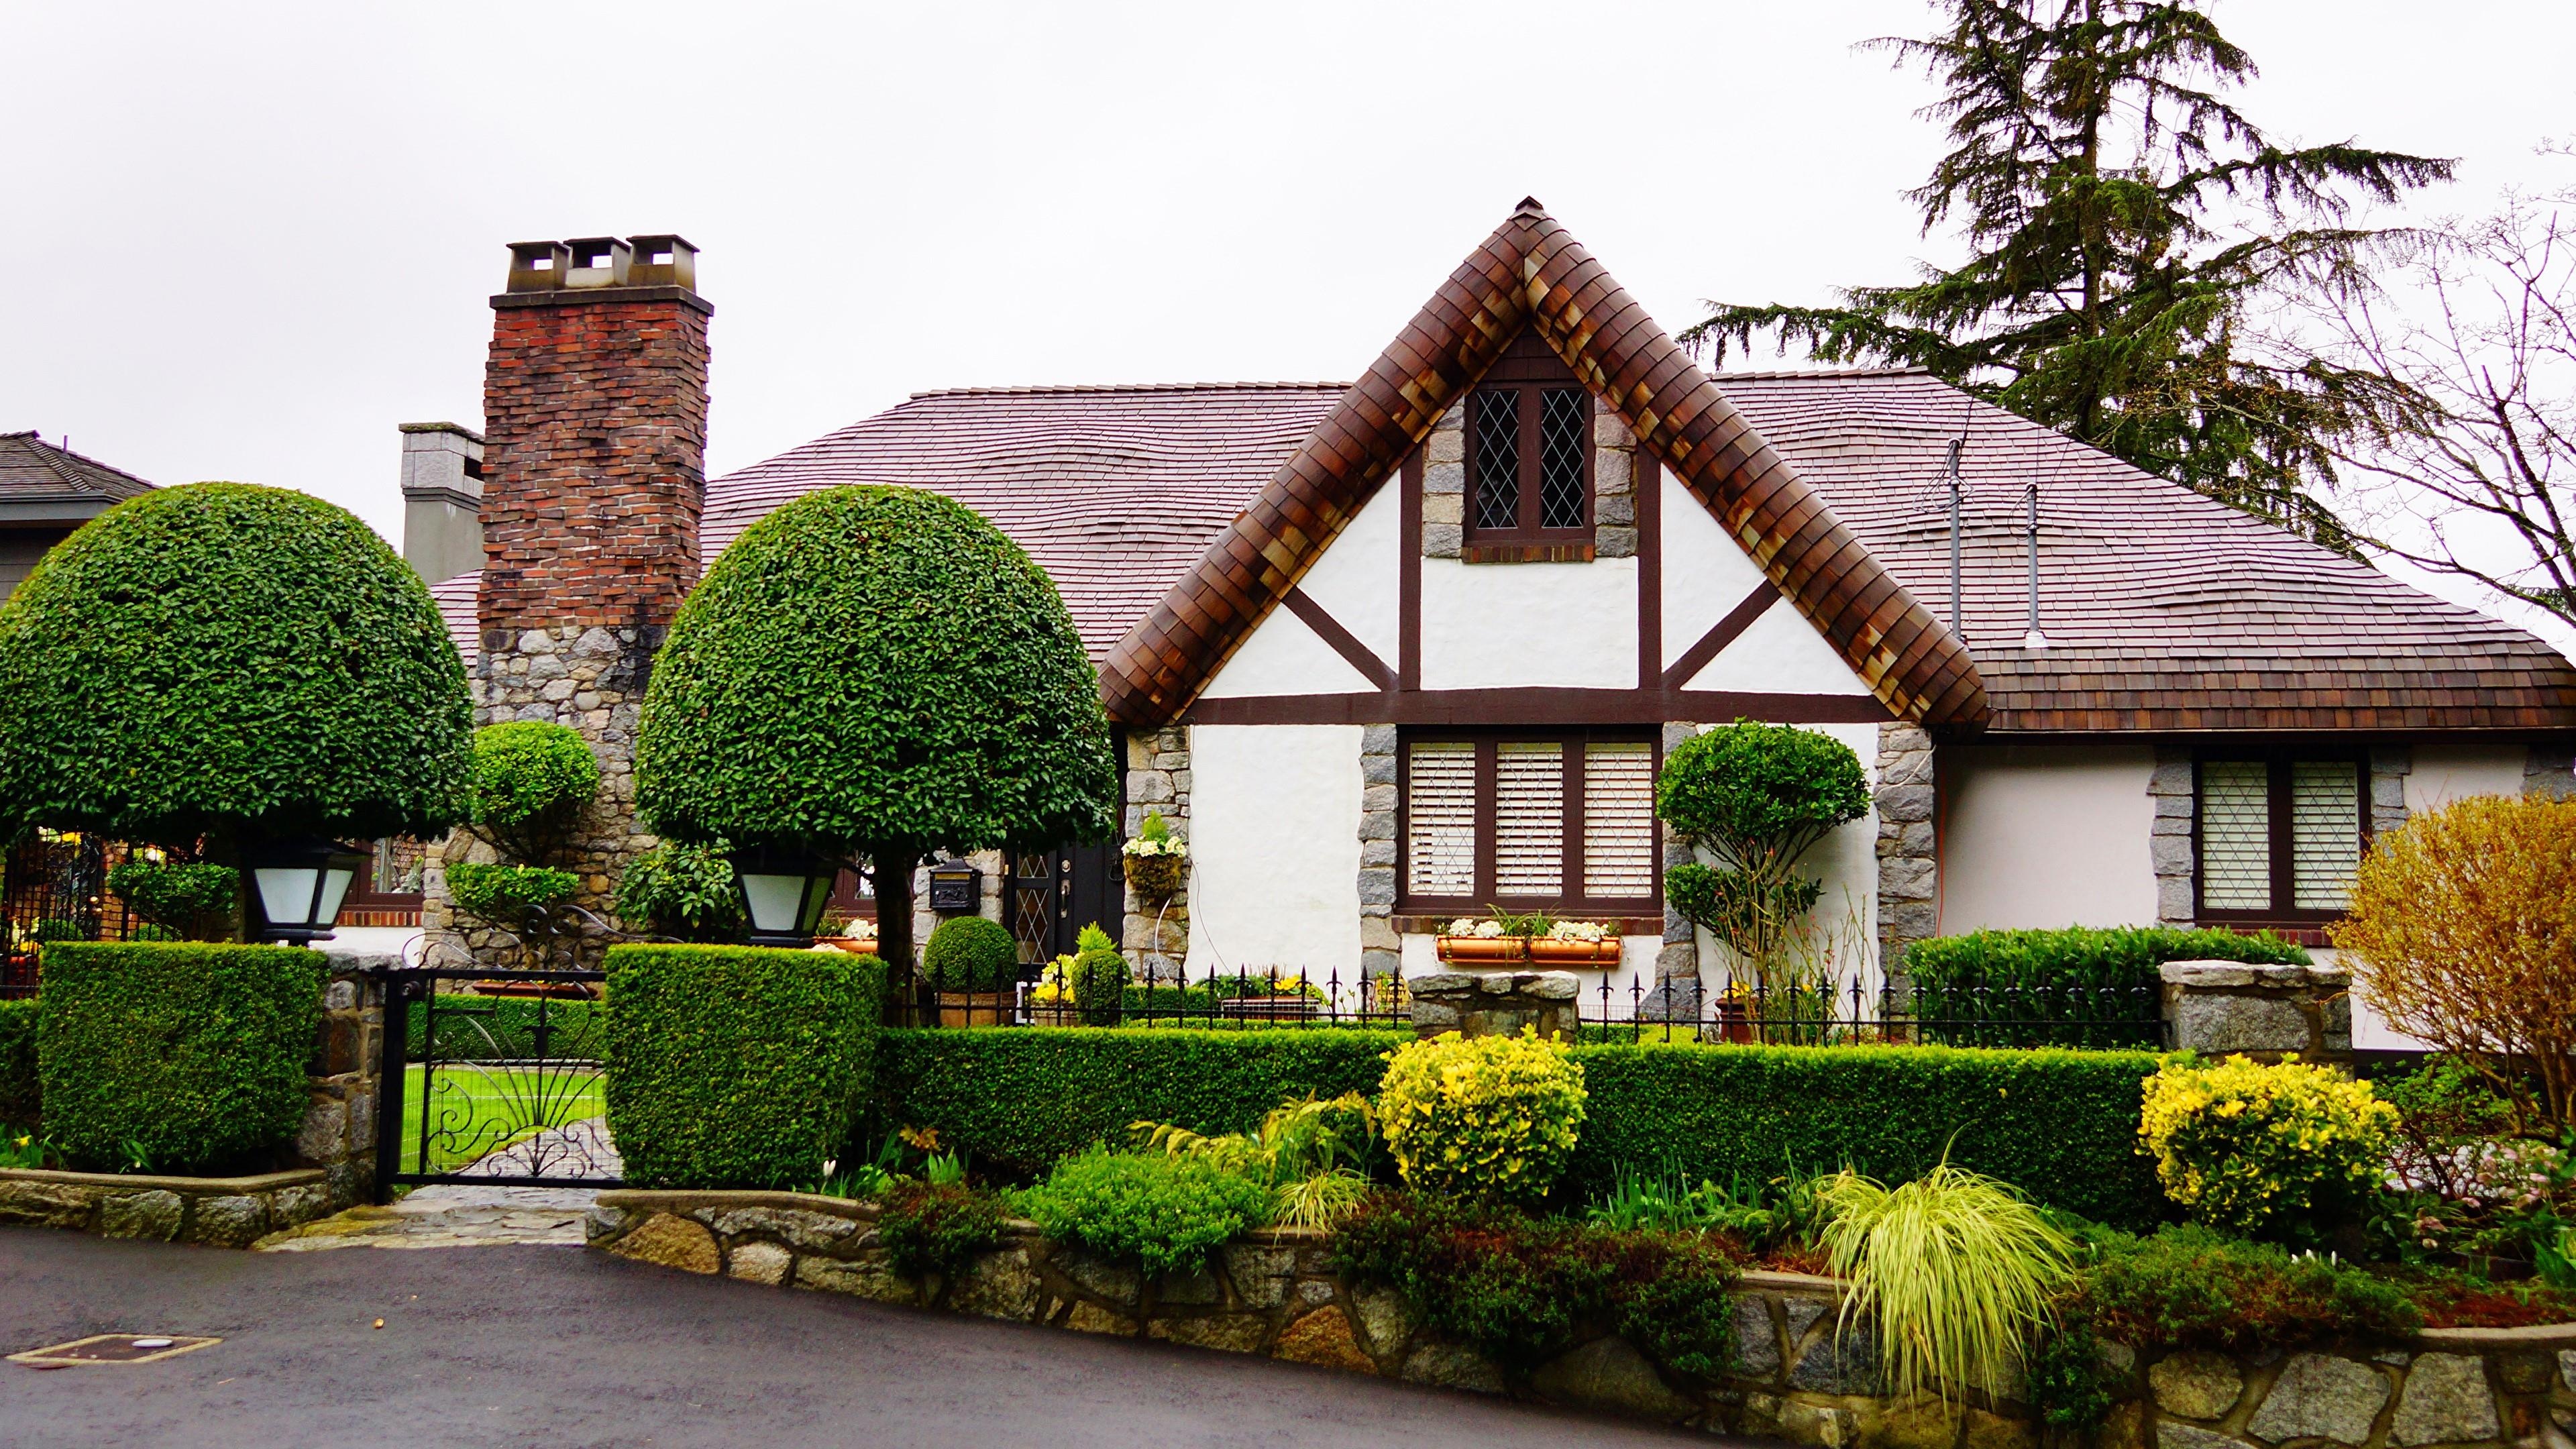 Country house, Small cottages, Quaint charm, Picturesque views, 3840x2160 4K Desktop